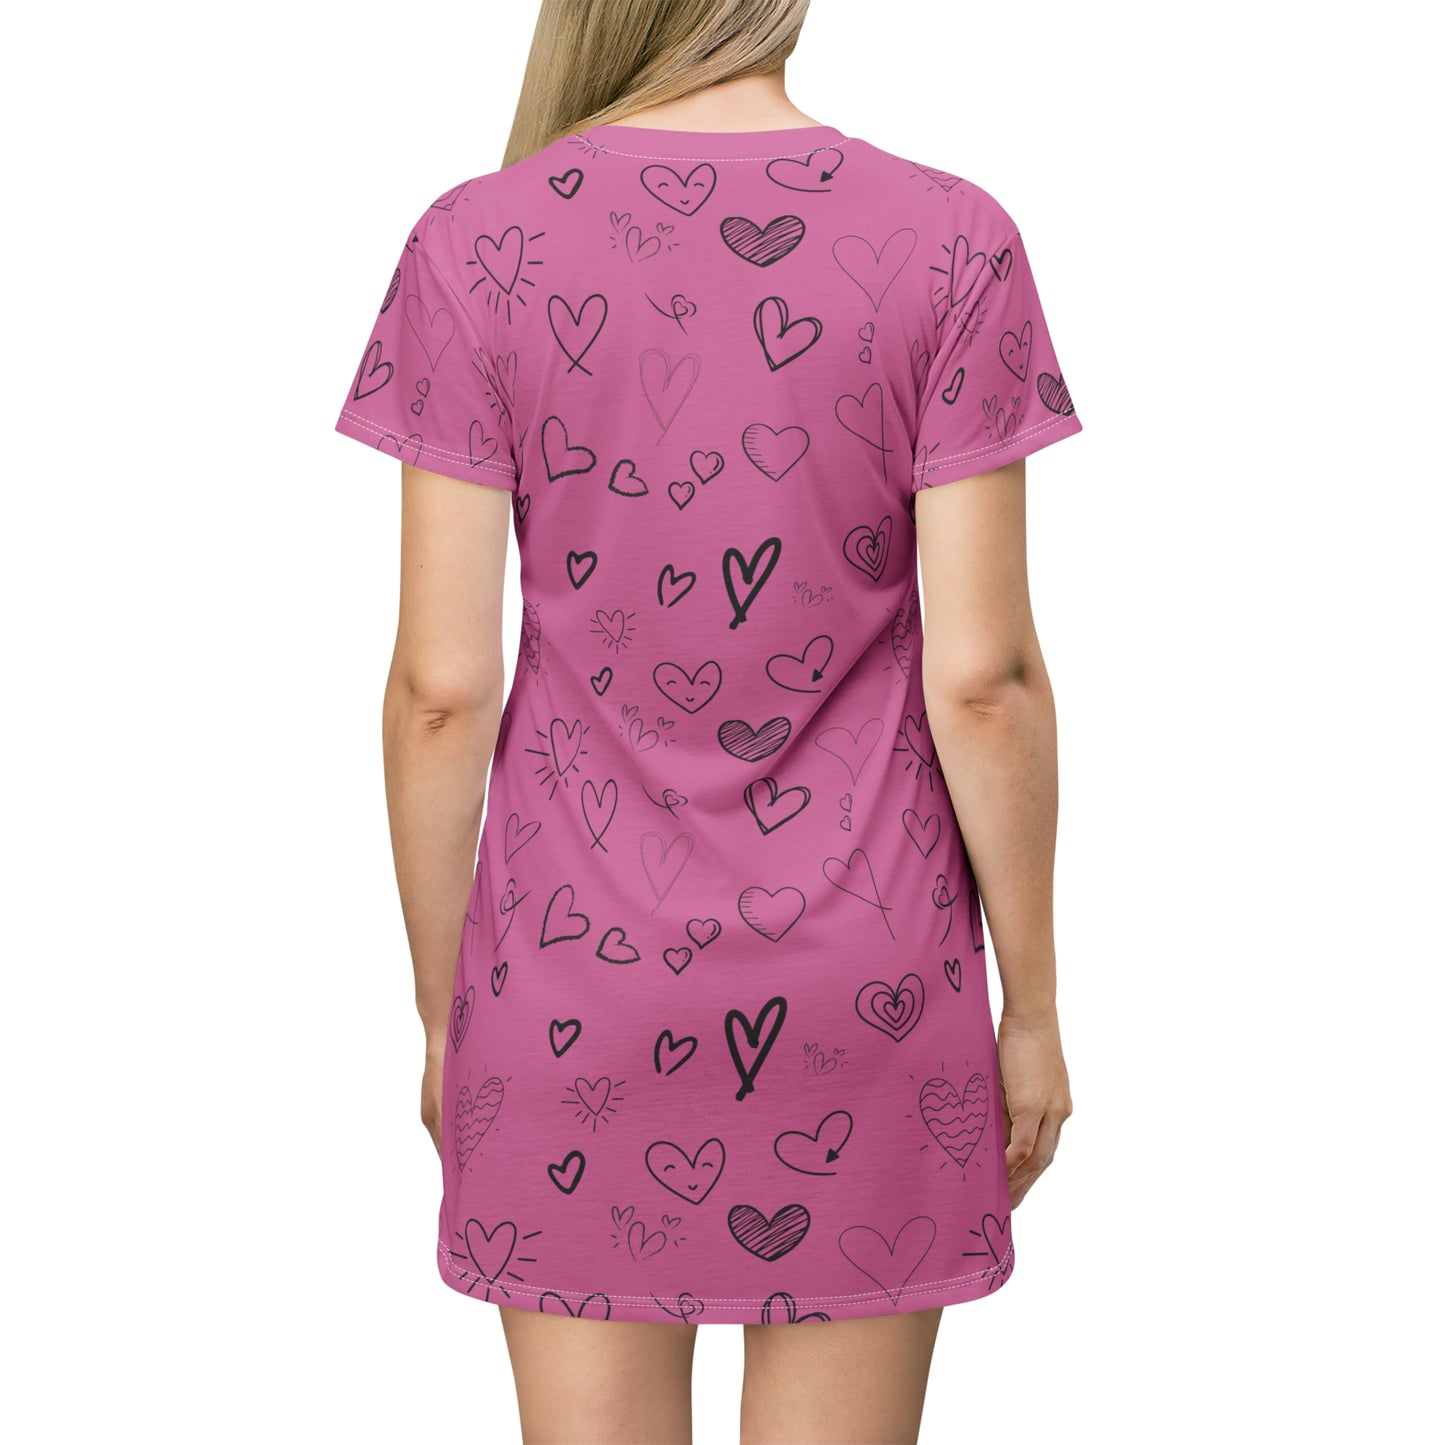 Hearts all over T-Shirt Dress - Light Pink